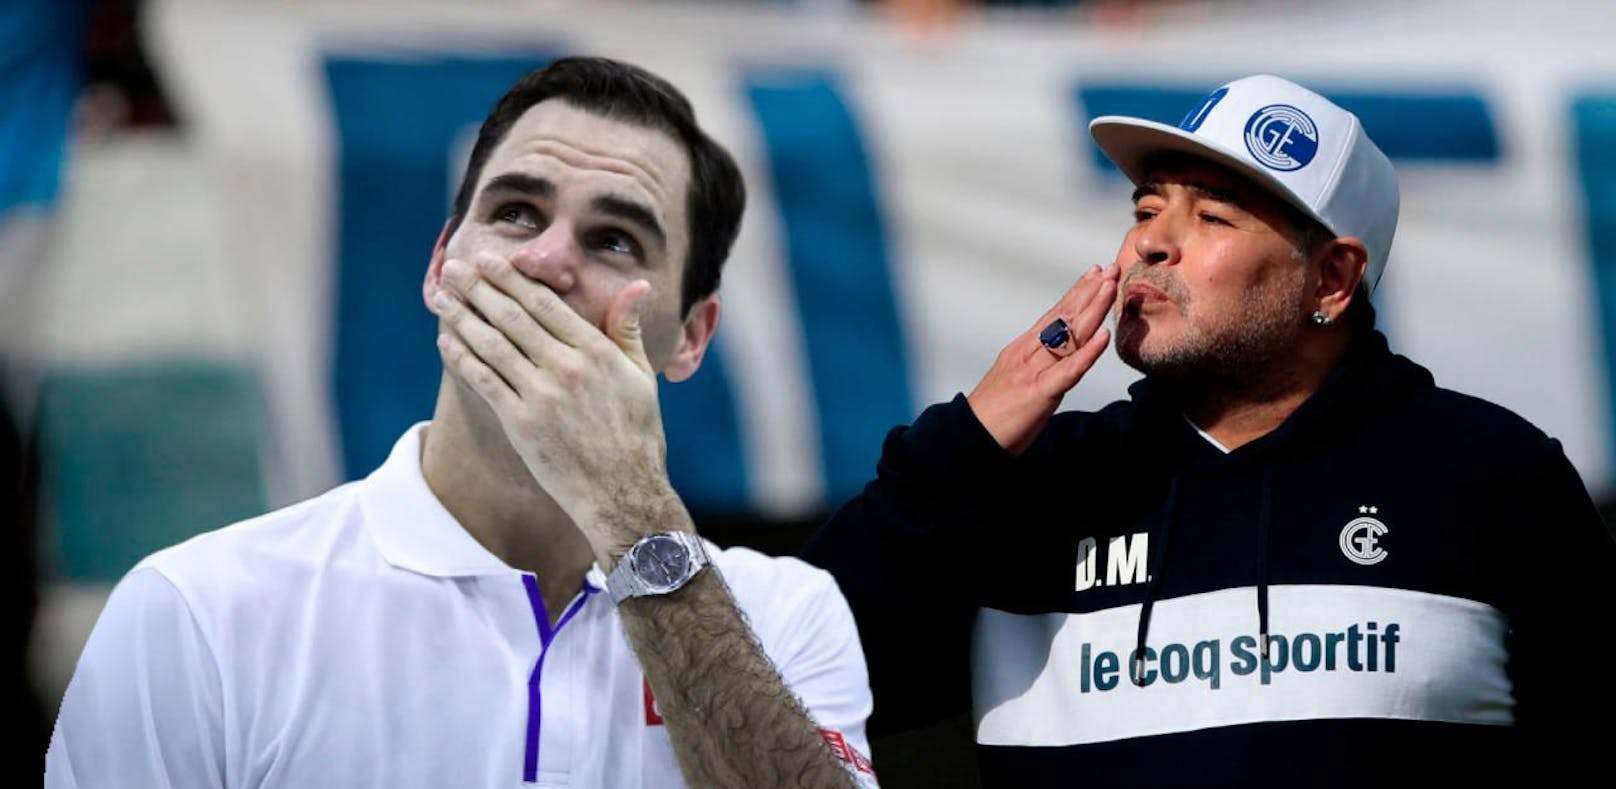 Maradona rührt Federer mit Botschaft zu Tränen